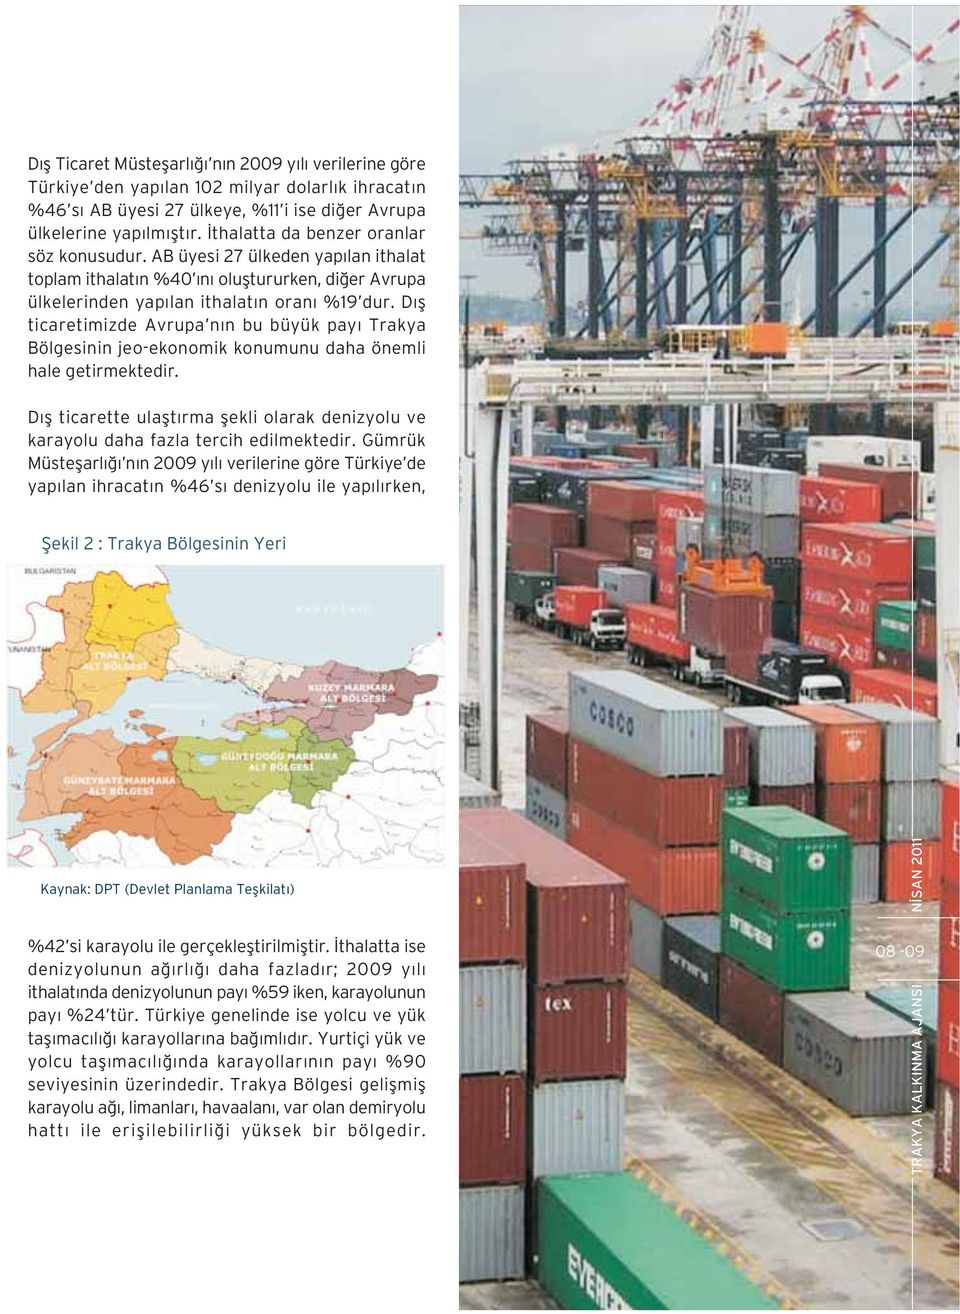 D fl ticaretimizde Avrupa n n bu büyük pay Trakya Bölgesinin jeo-ekonomik konumunu daha önemli hale getirmektedir.